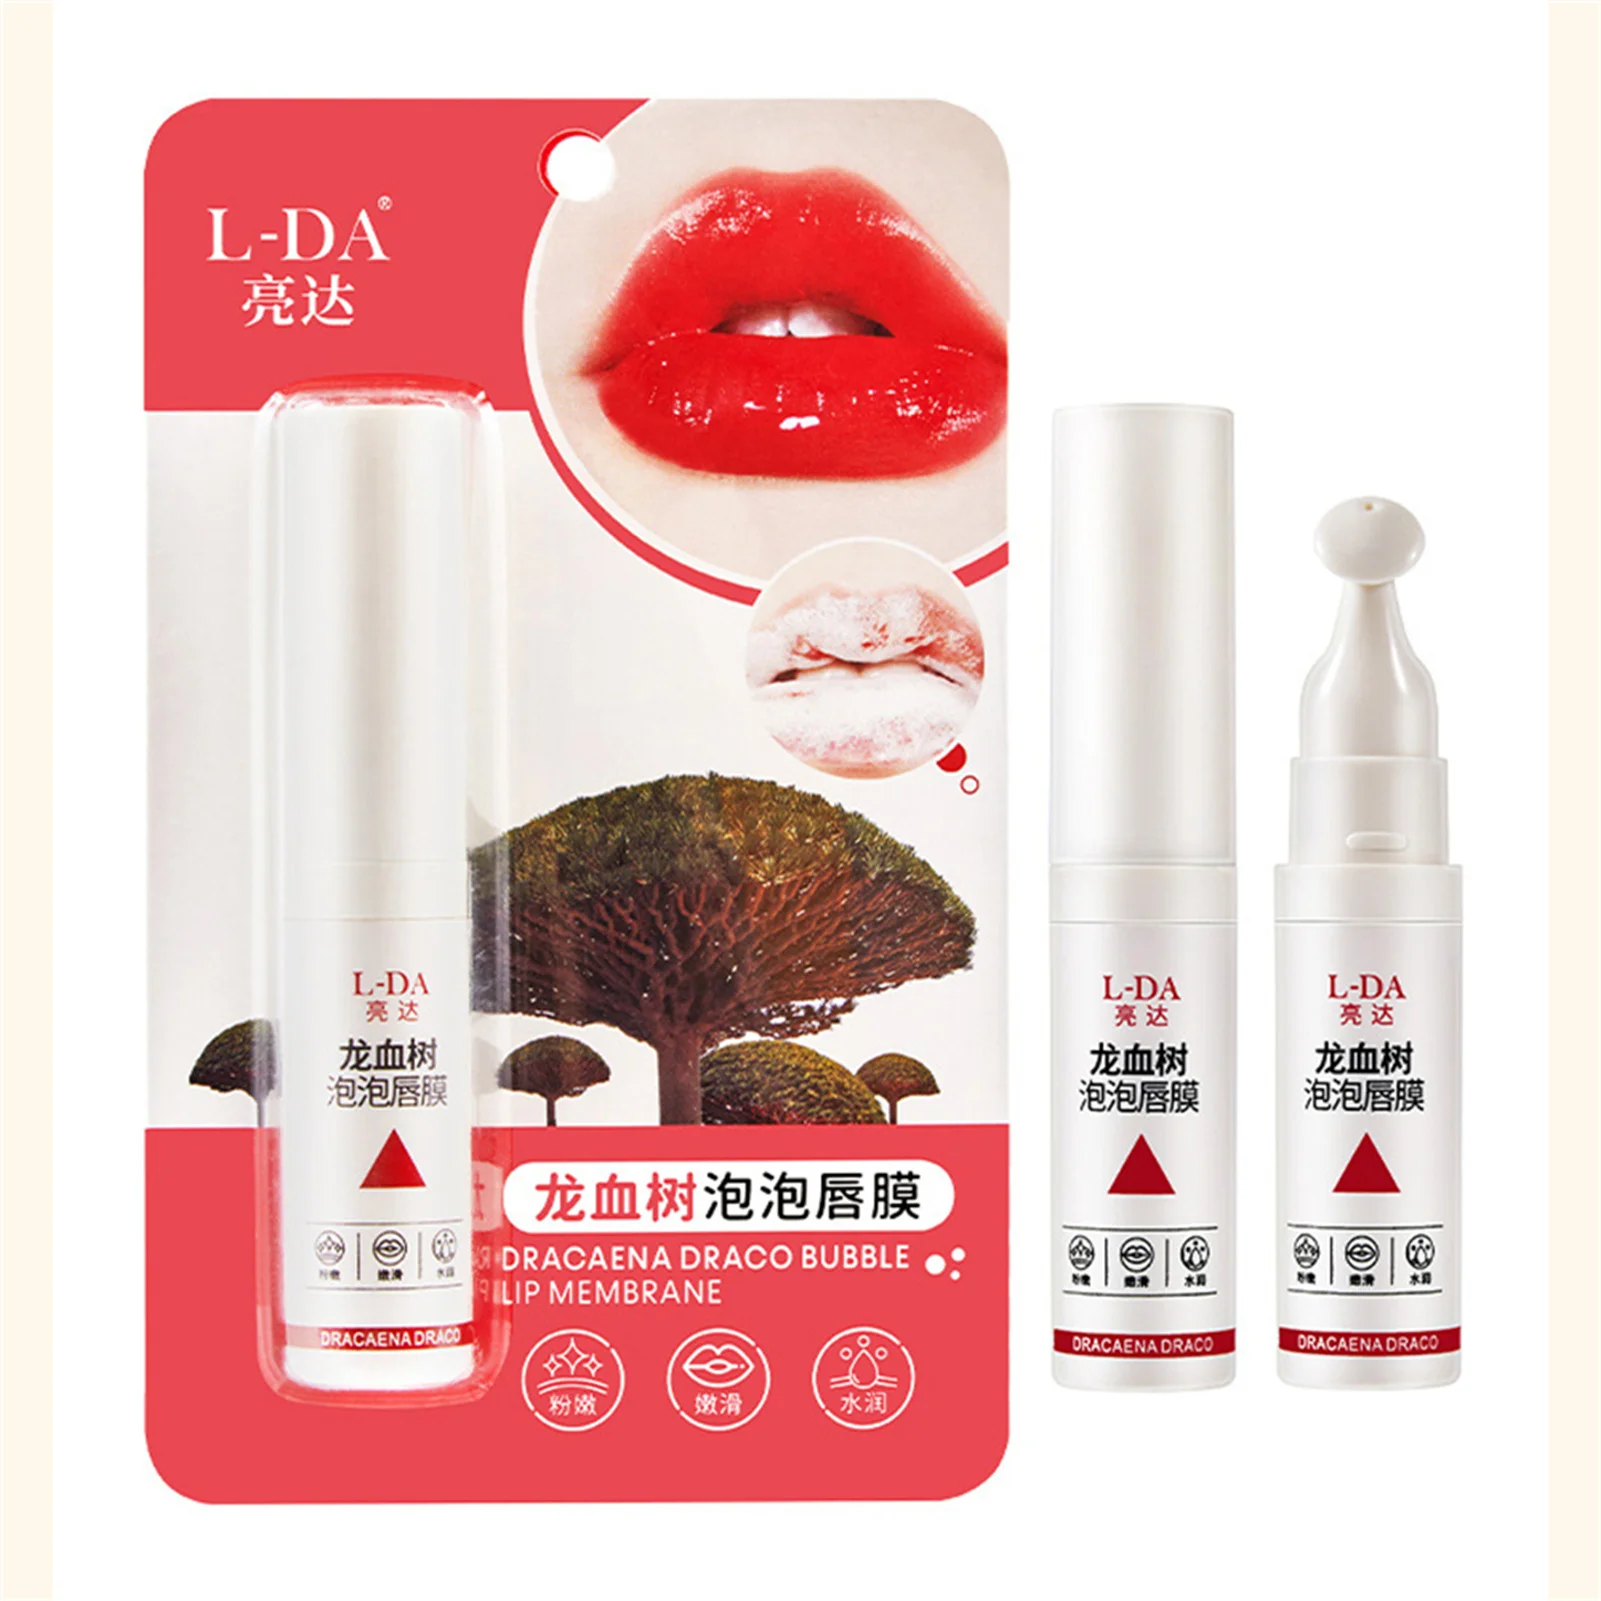 

7.5ml Lip Mousse Therapy Mask Moisturizing and Creates Soft Lips Daytime Nighttime Lips Massage